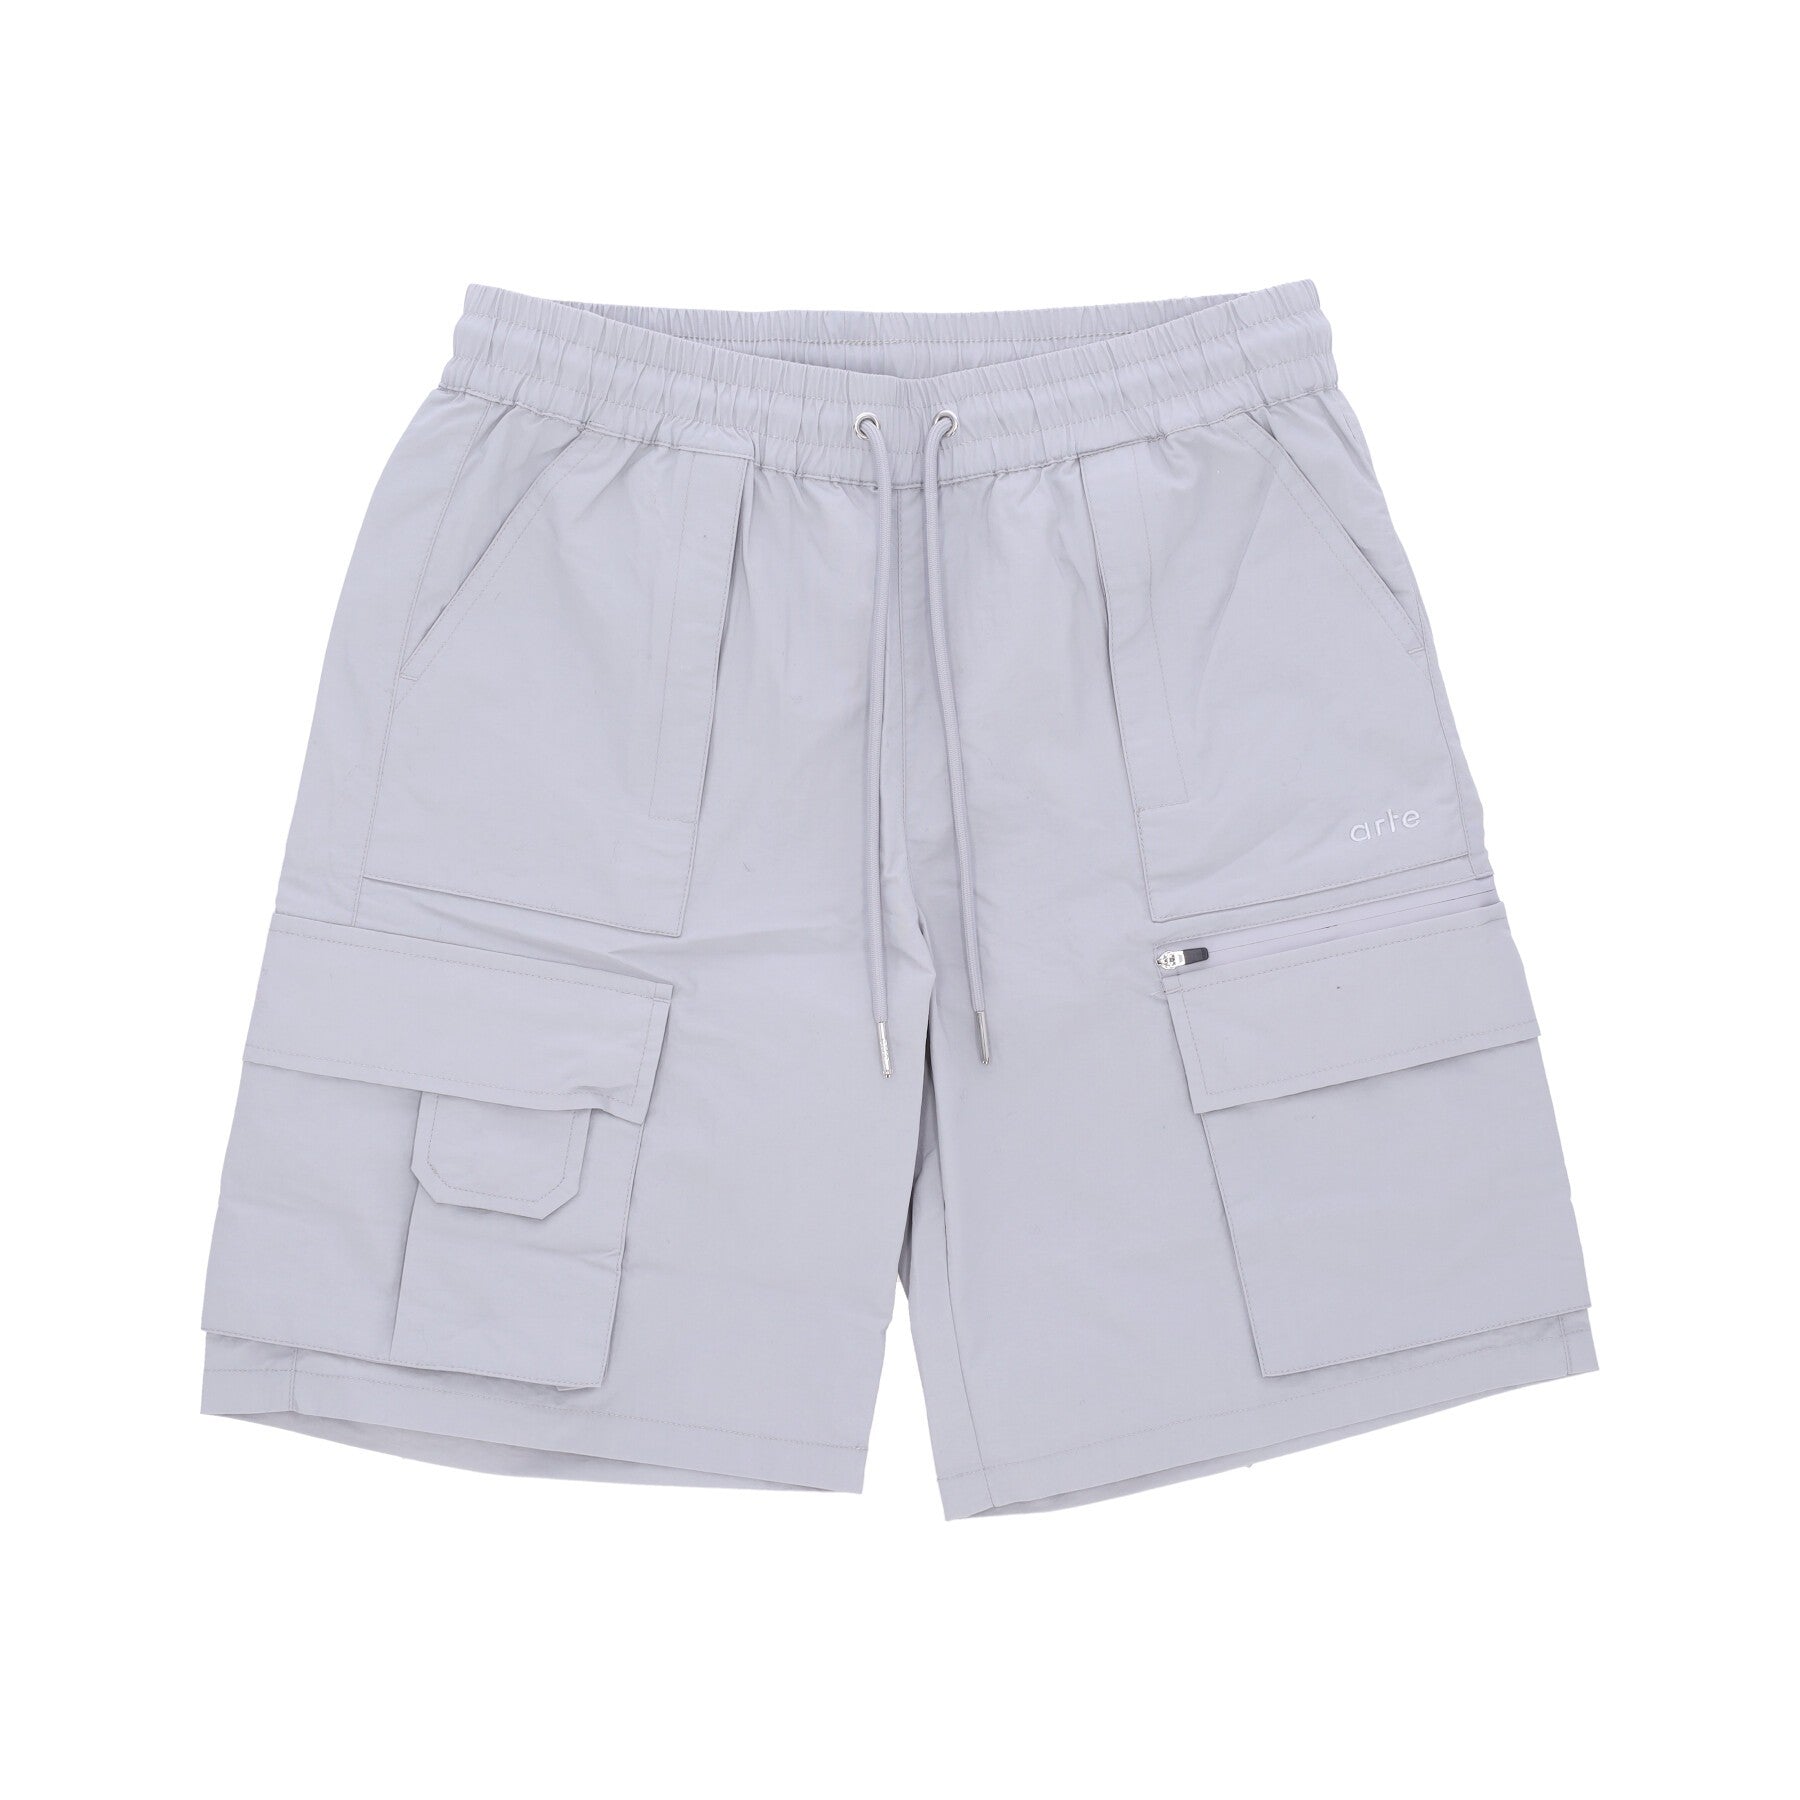 Steiner Cargo Short Men's Short Pants Grey